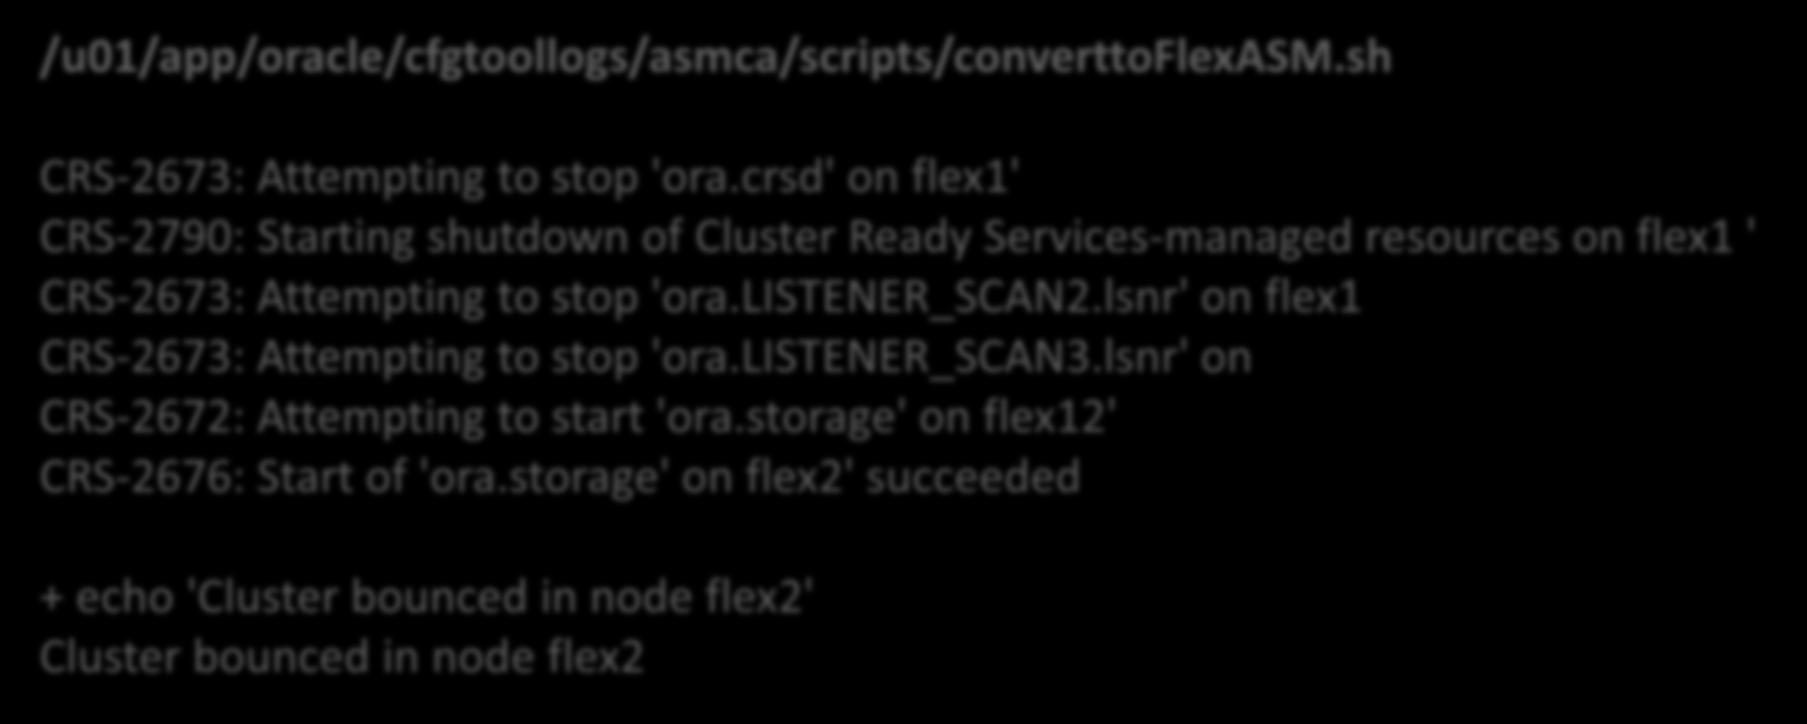 Flex ASM Dönüşümü [oracle@flex1 ~]$ asmca -silent -converttoflexasm -asmnetworks eth1/10.154.138.